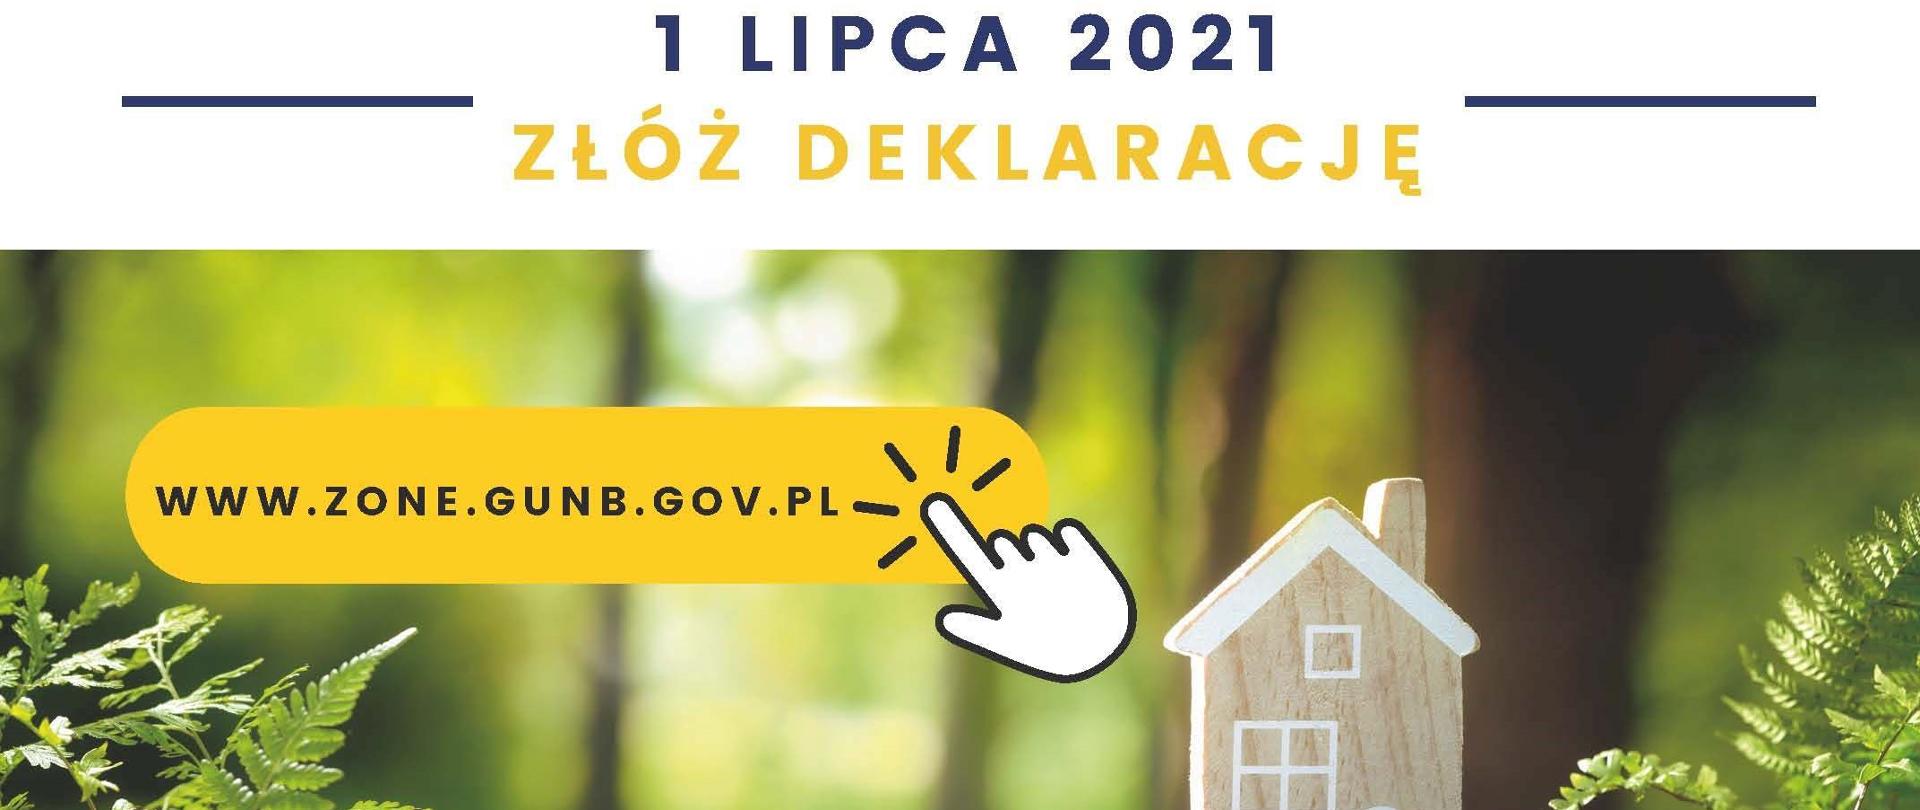 U góry hasło 1 lipca 2021 złóż deklarację. Poniżej na obrazku makieta domku z paprociami i adres internetowy: www.zome.gunb.gov.pl.